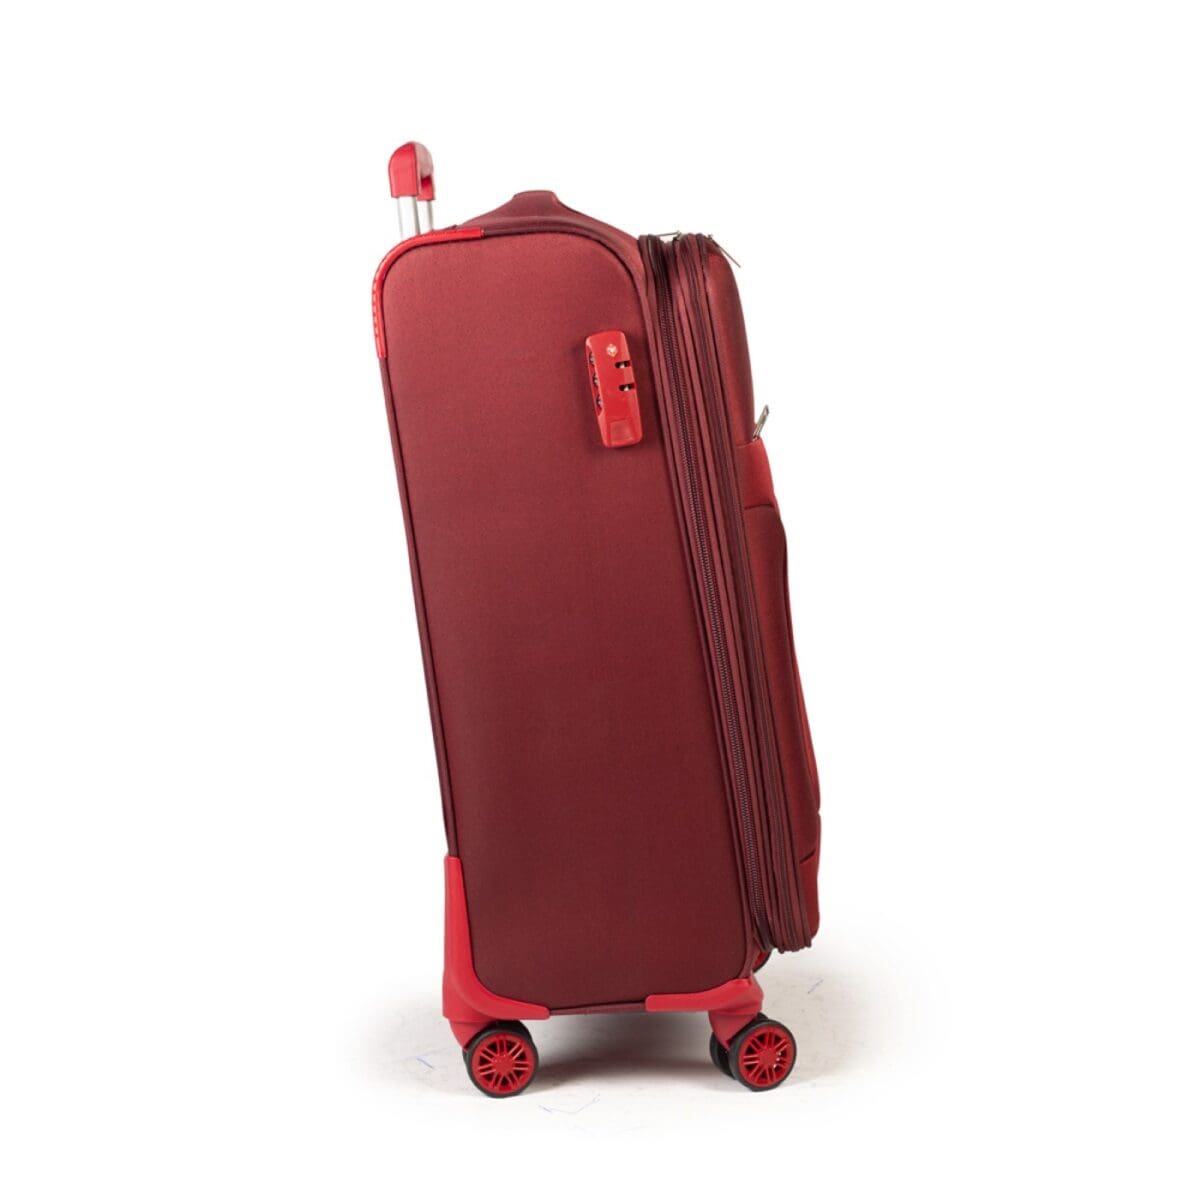 Δεξιά πλευρά βαλίτσας με κλειδαριά σε μπορντό χρώμα